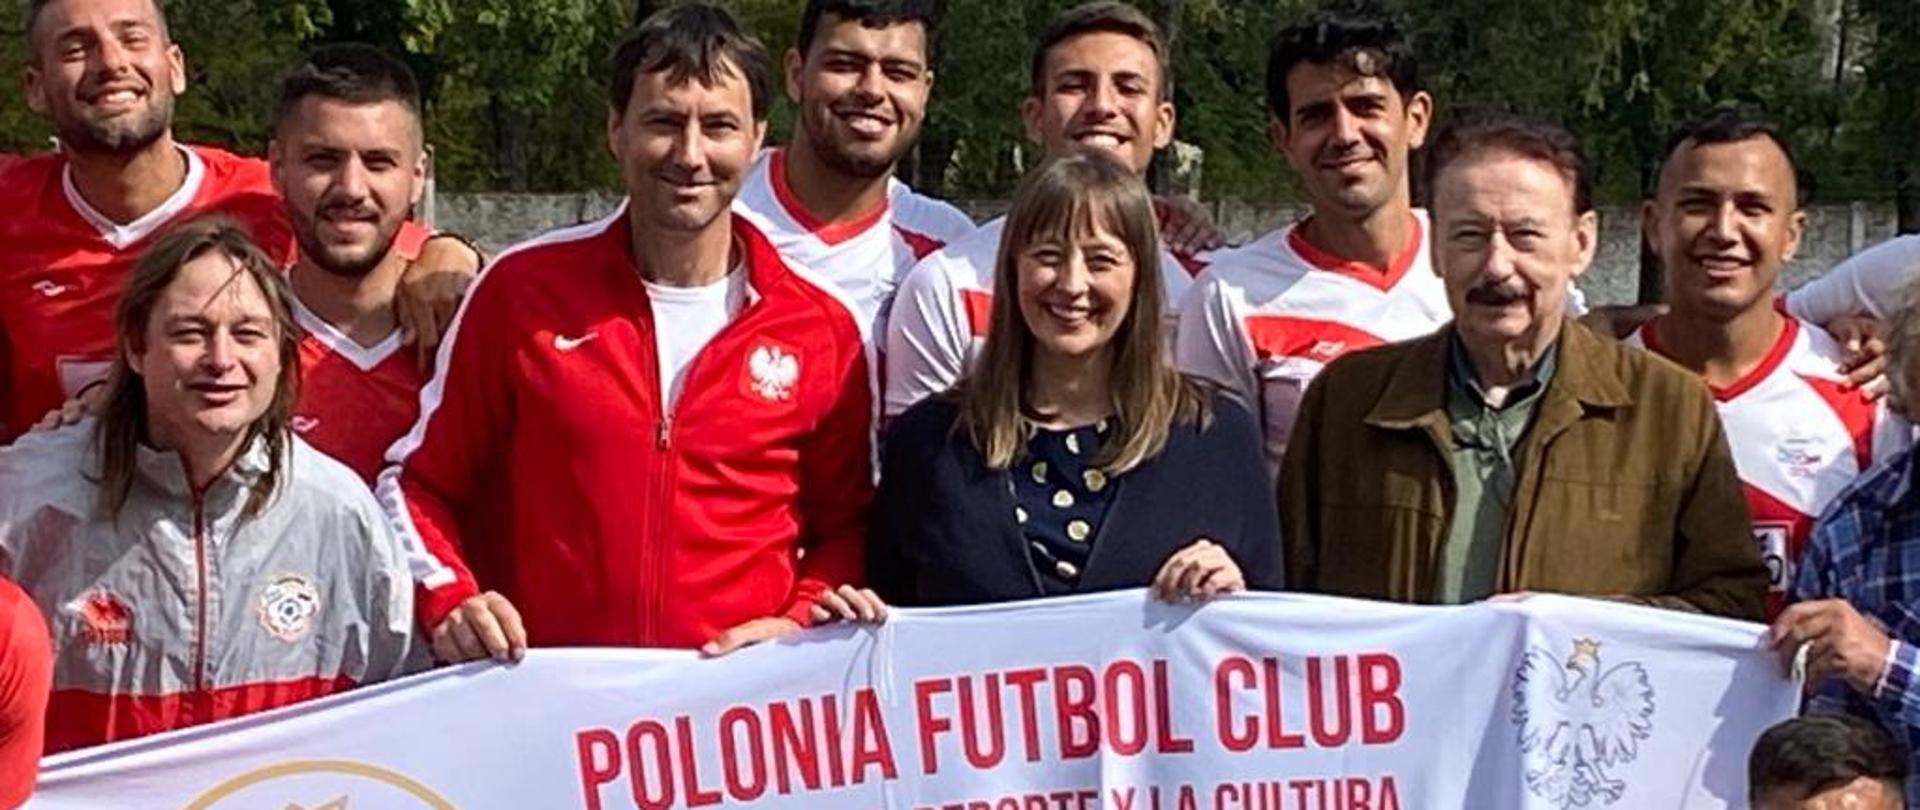 Klub piłkarski Polonia FC obchodzi w tym roku 15-lecie.